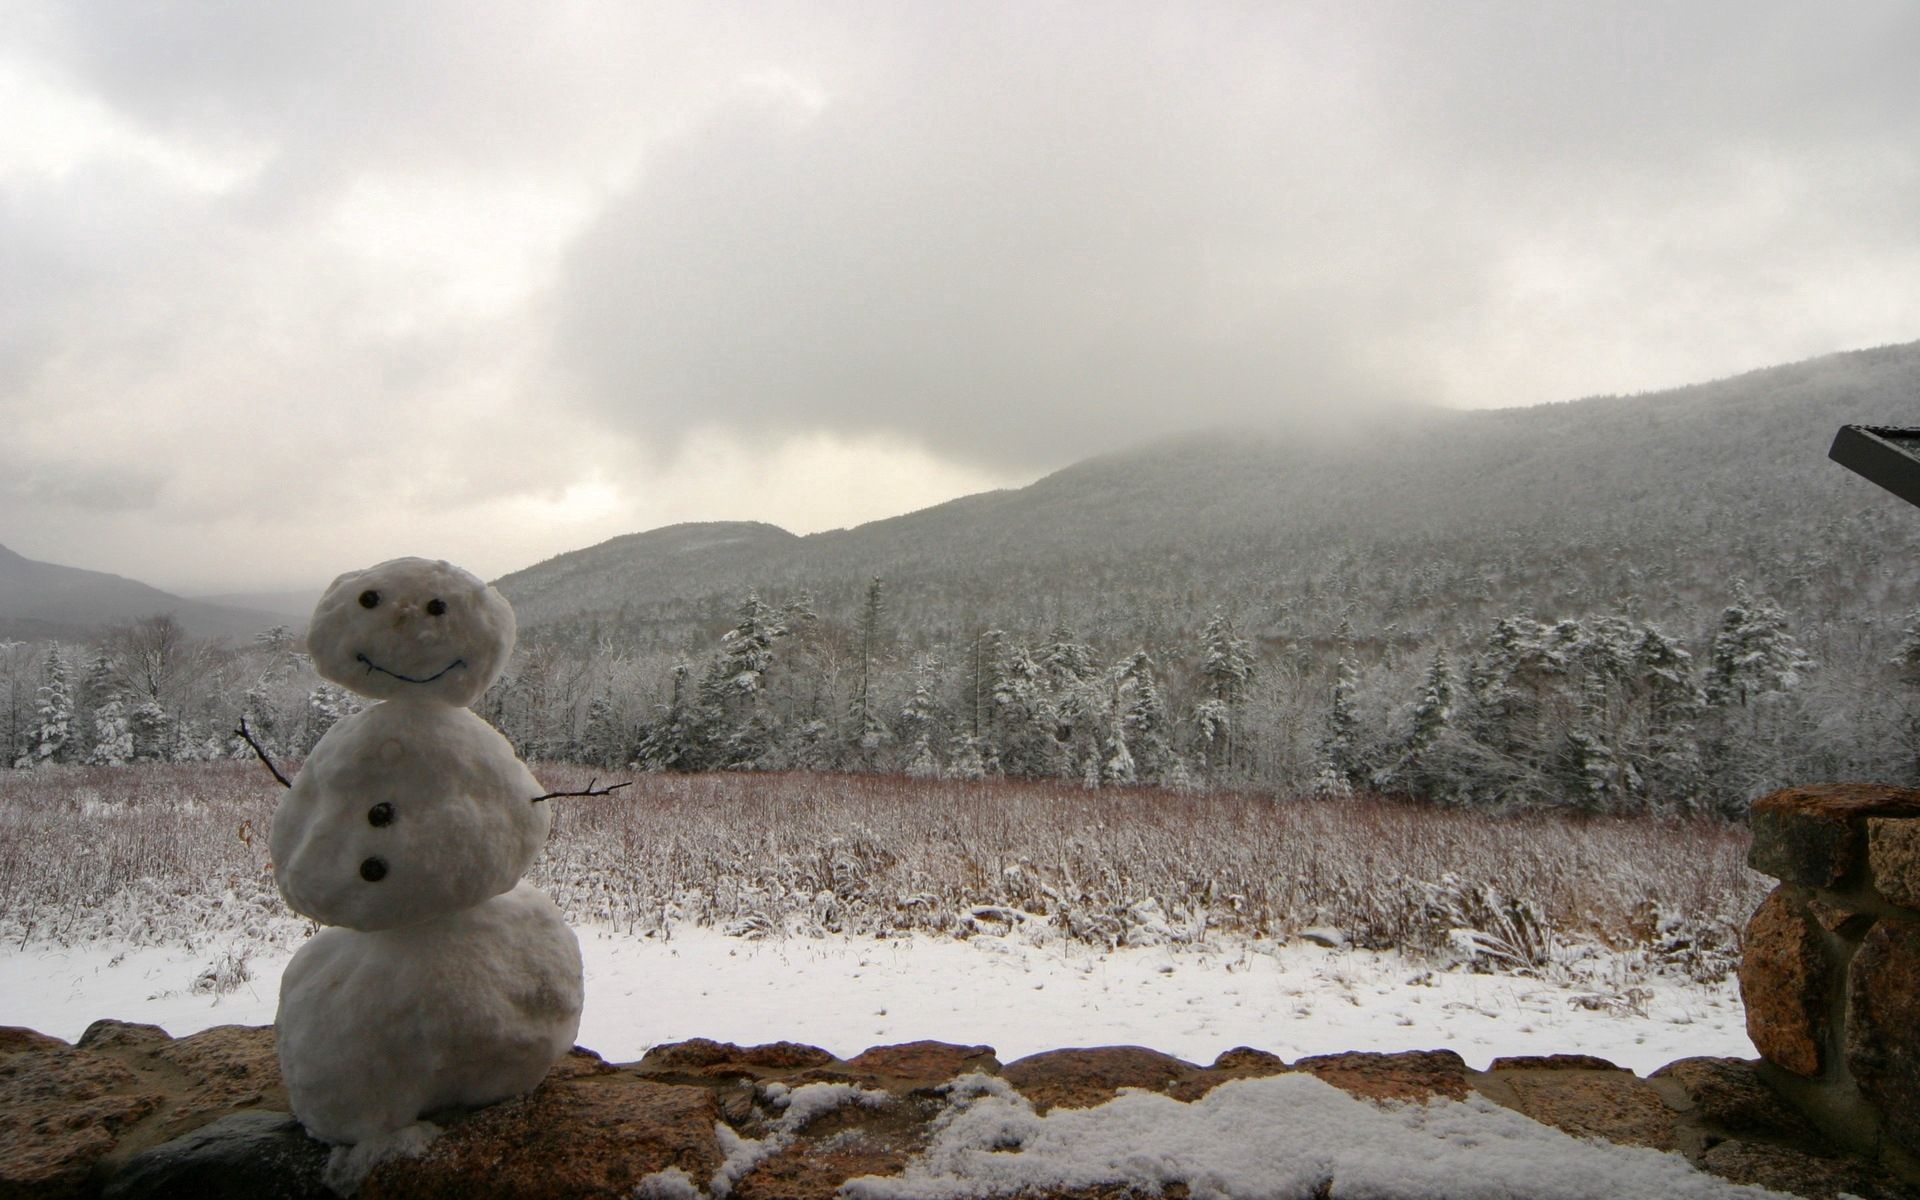 Скачать обои бесплатно Снеговик, Природа, Облака, Деревья, Туман, Горы, Зима картинка на рабочий стол ПК